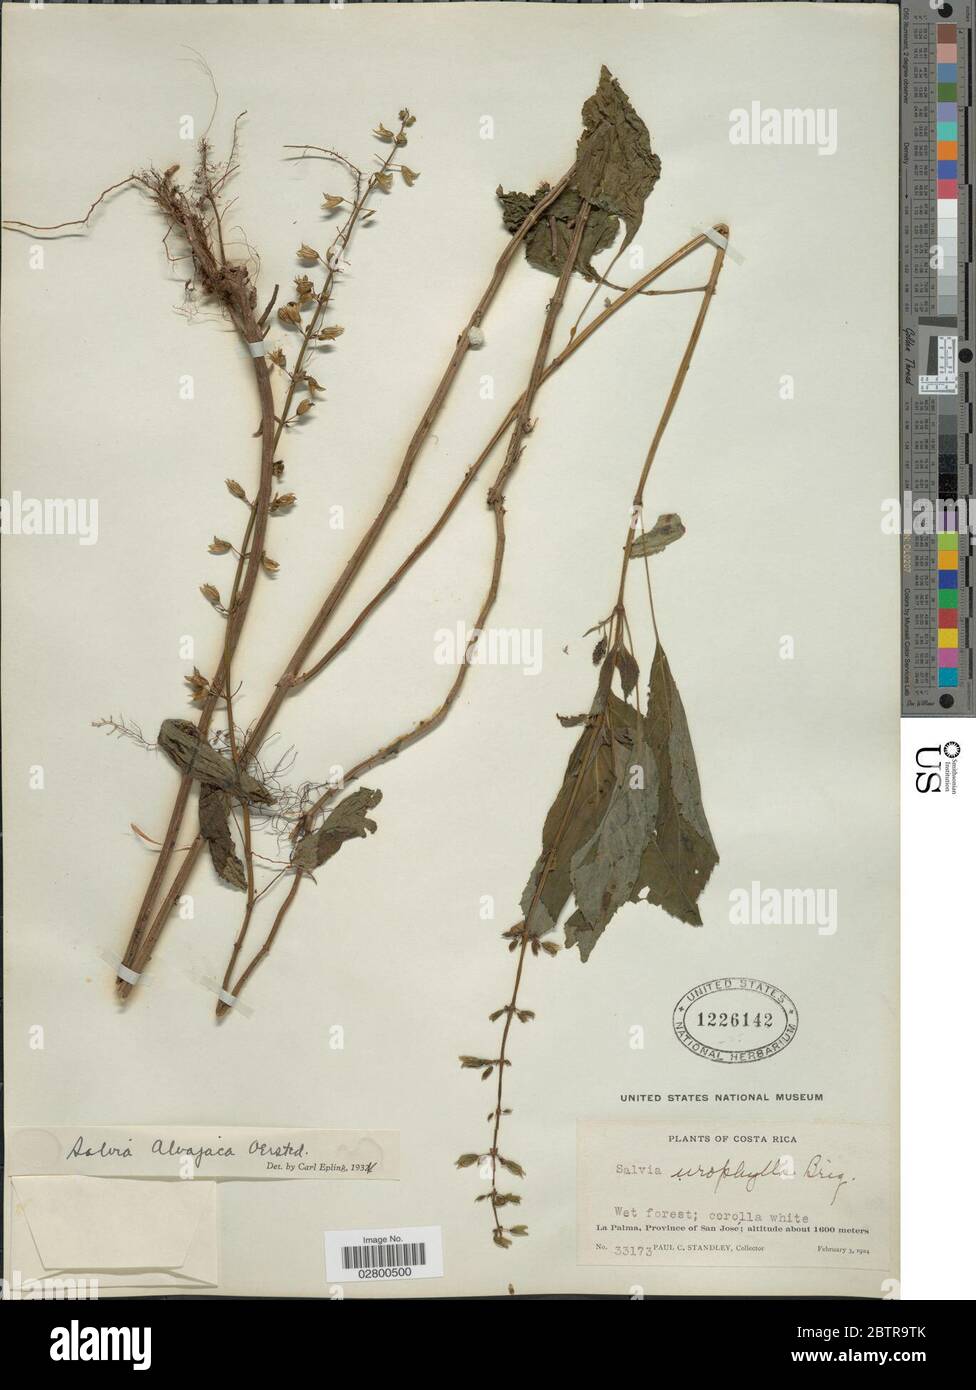 Salvia alvajaca Oerst. Stock Photo